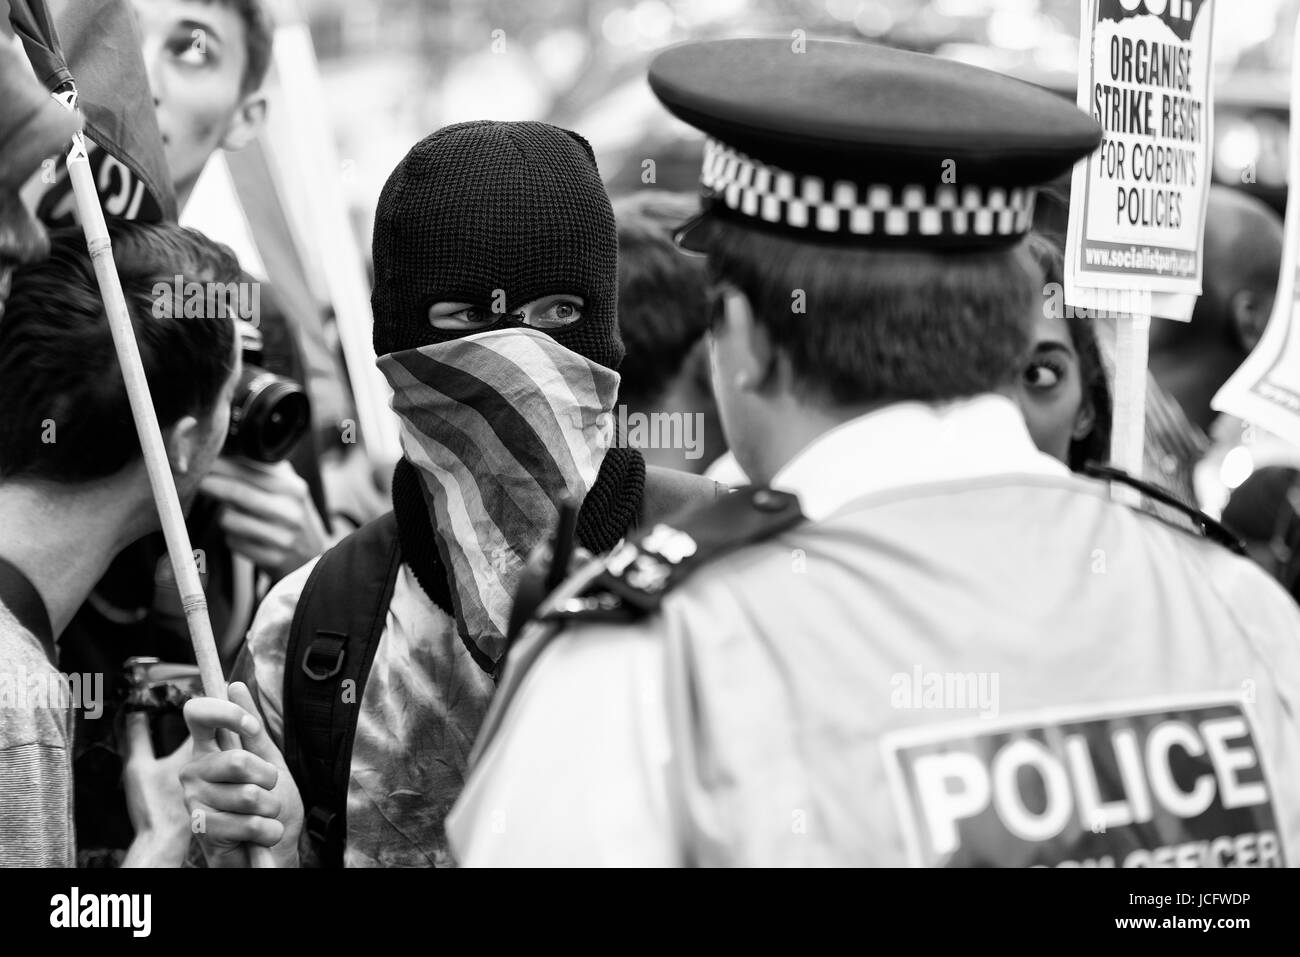 Manifestants à Whitehall devant Downing Street dans une ambiance conflictuelle. Noir et blanc. Monochrome Banque D'Images